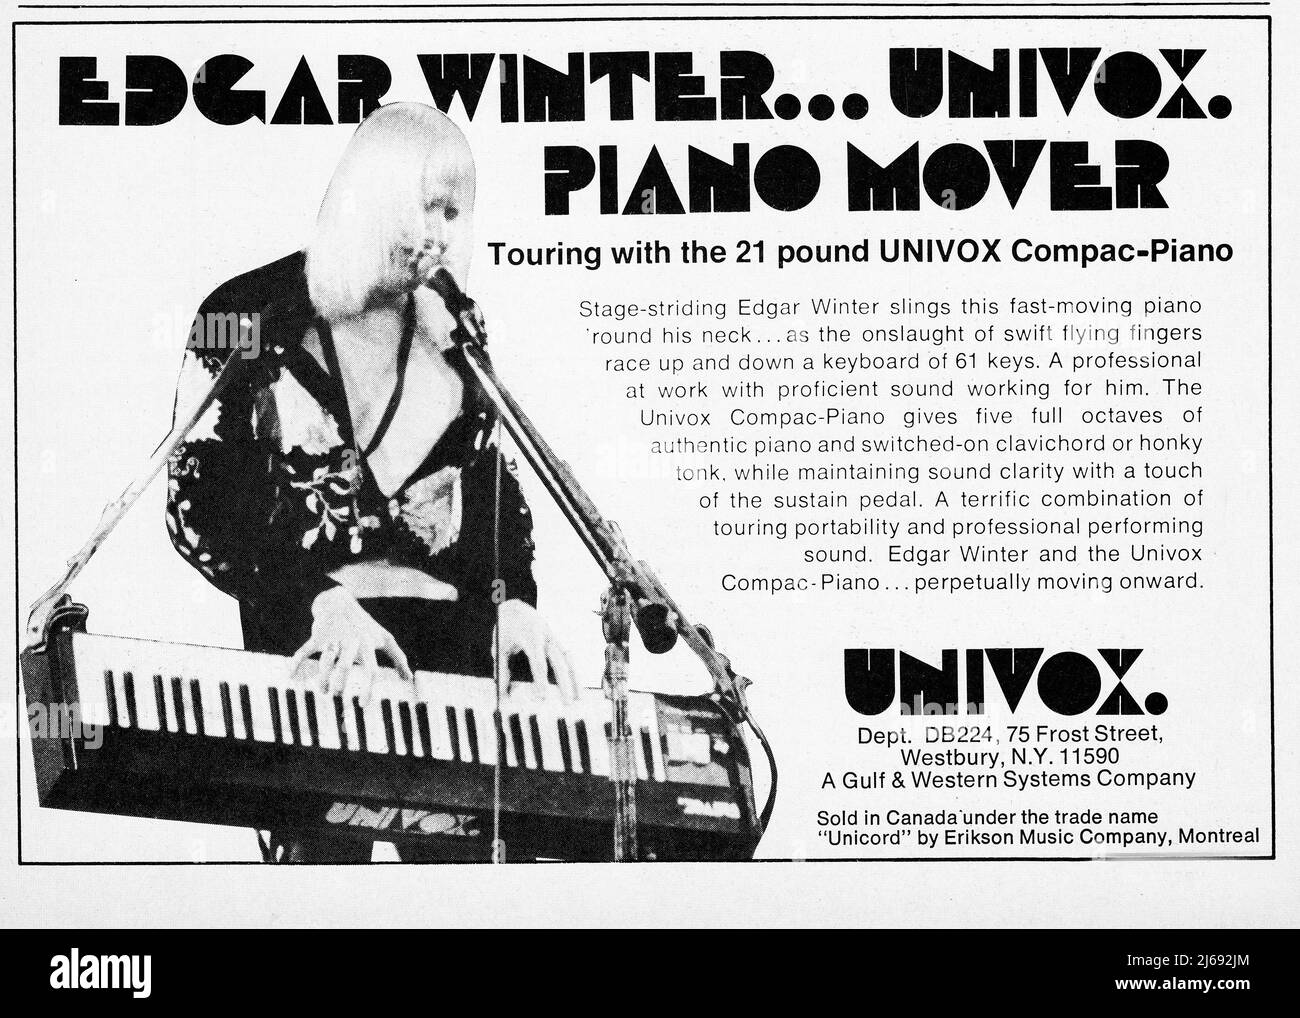 Une publicité pour Univox Compac-Piano avec Johnny Winter, guitariste de blues légendaire. Il a été l'un des premiers claviers électroniques portables et Winter a inventé la sangle pour la jouer en se tenant debout. Banque D'Images